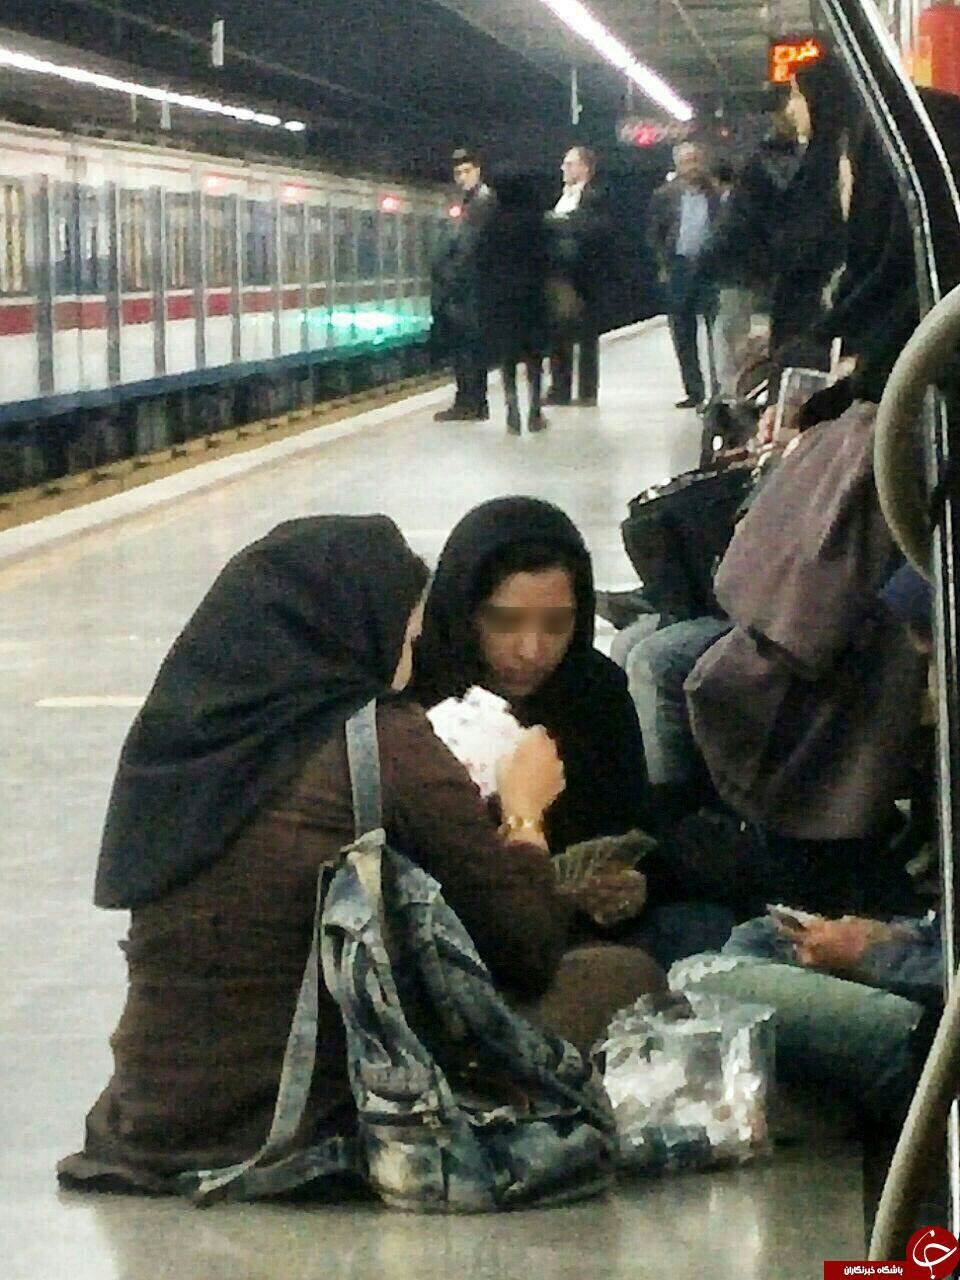 ورق بازی دختران در مترو + عکس